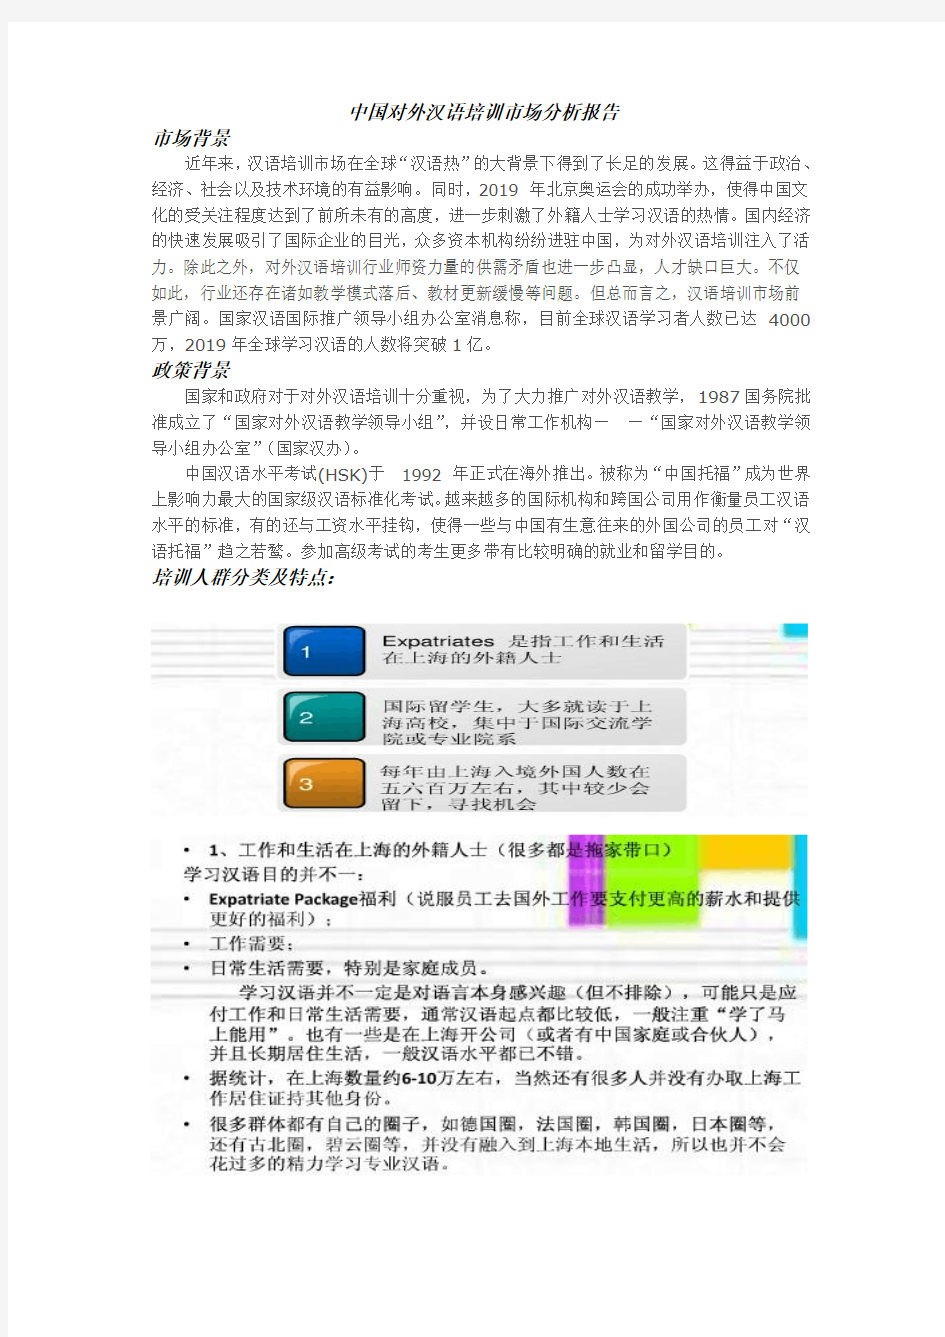 对外汉语教学市场分析报告(整合版)汇总-共15页